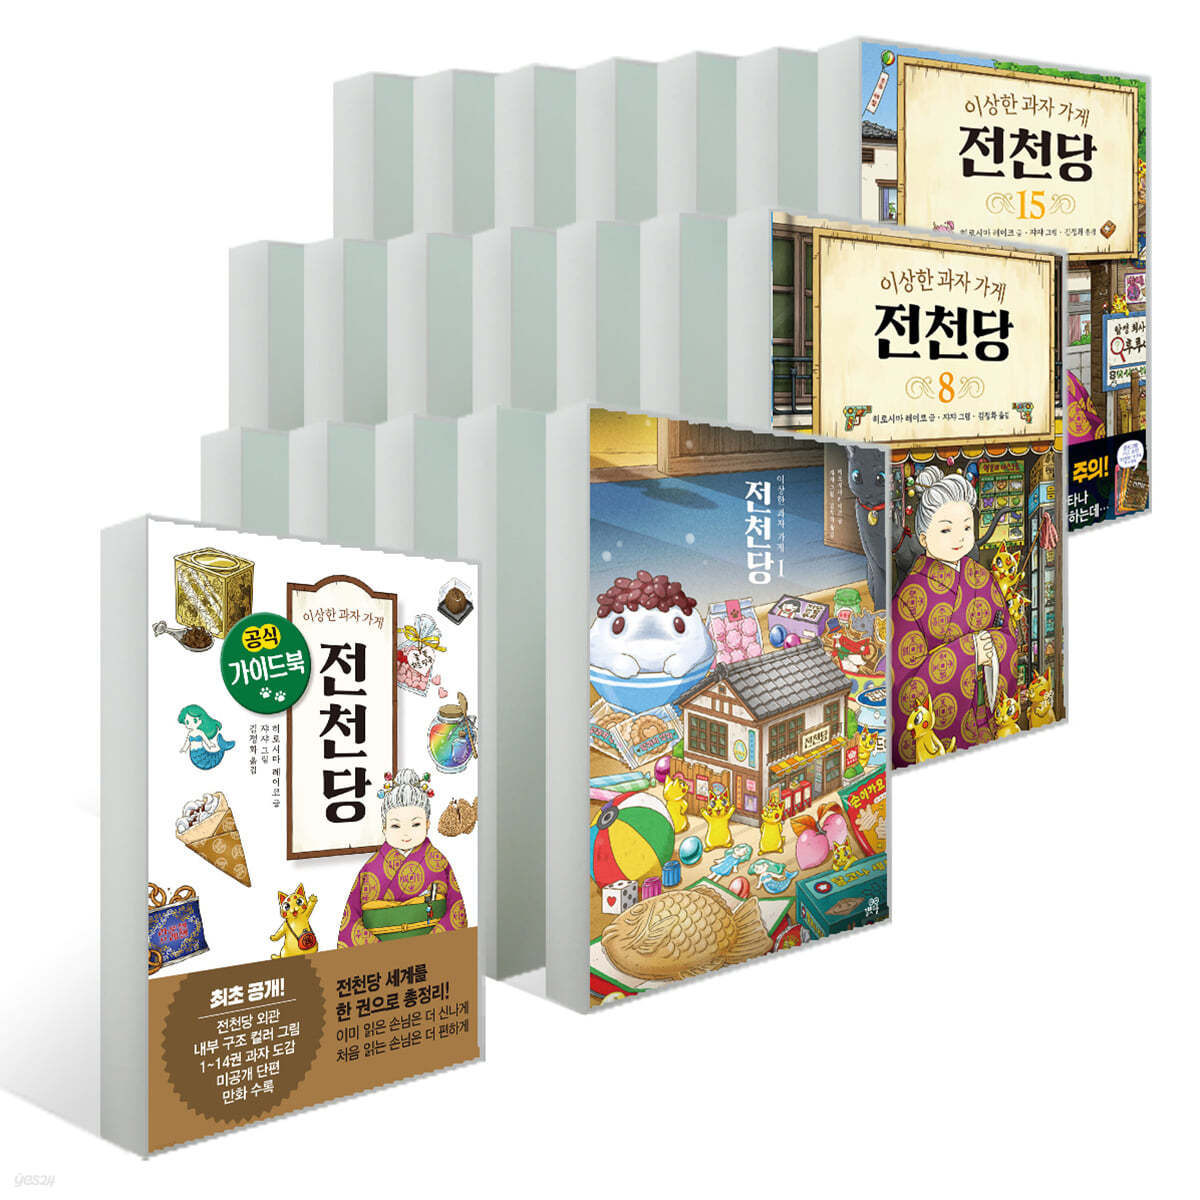 이상한 과자 가게 전천당 1~15권 + 공식 가이드북